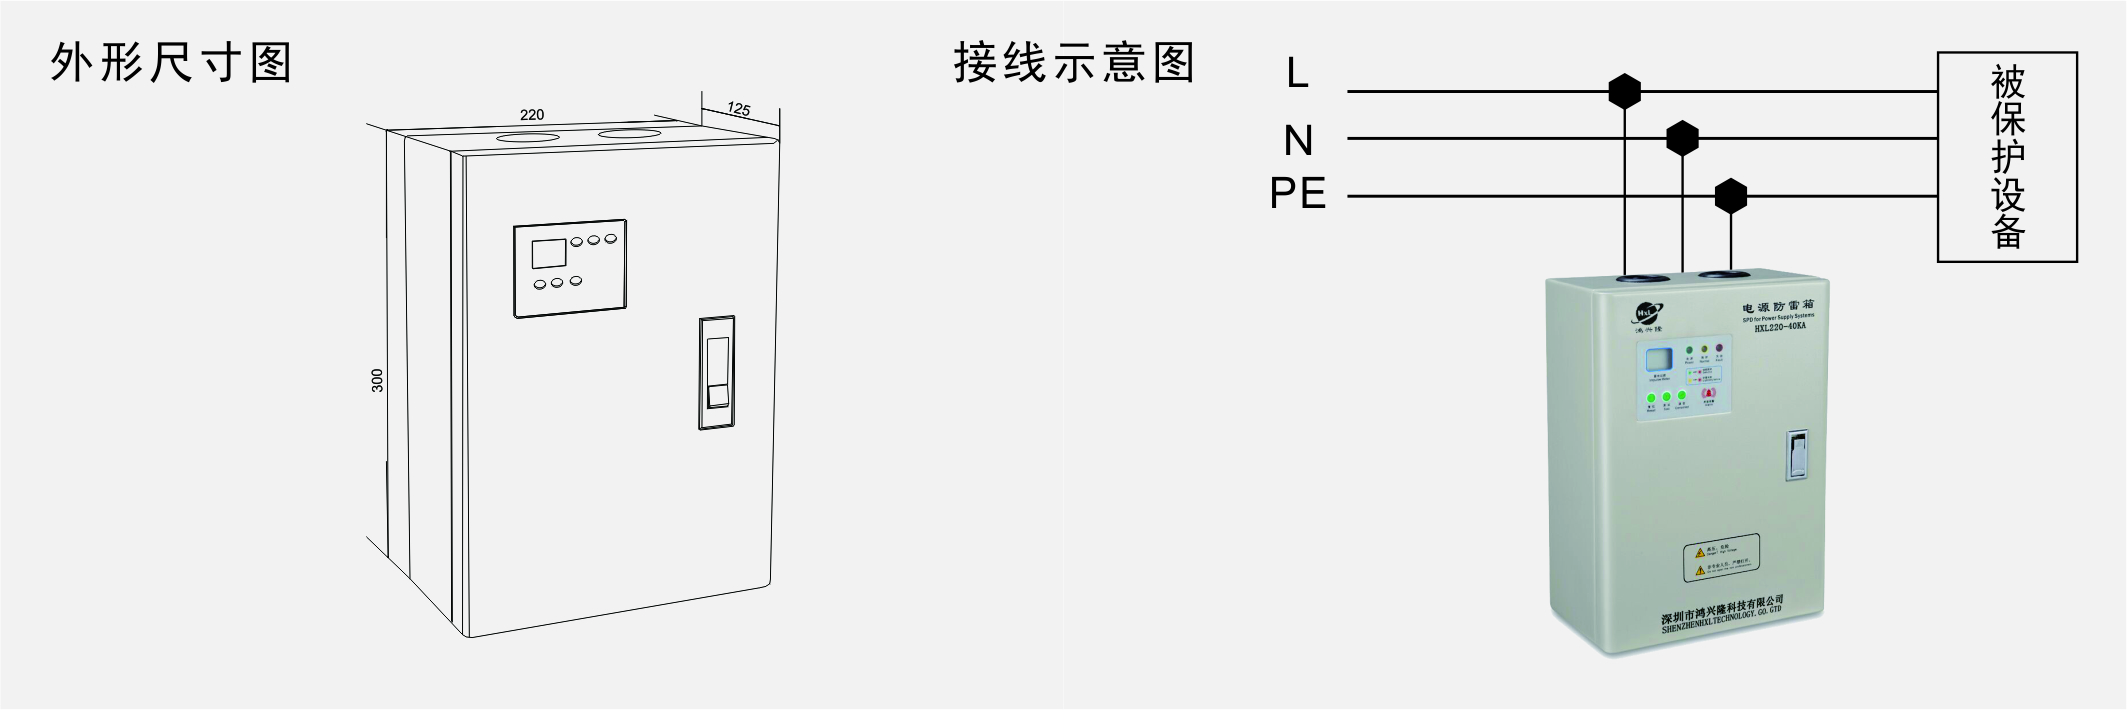 2个单相电源防雷箱安装示意图.jpg